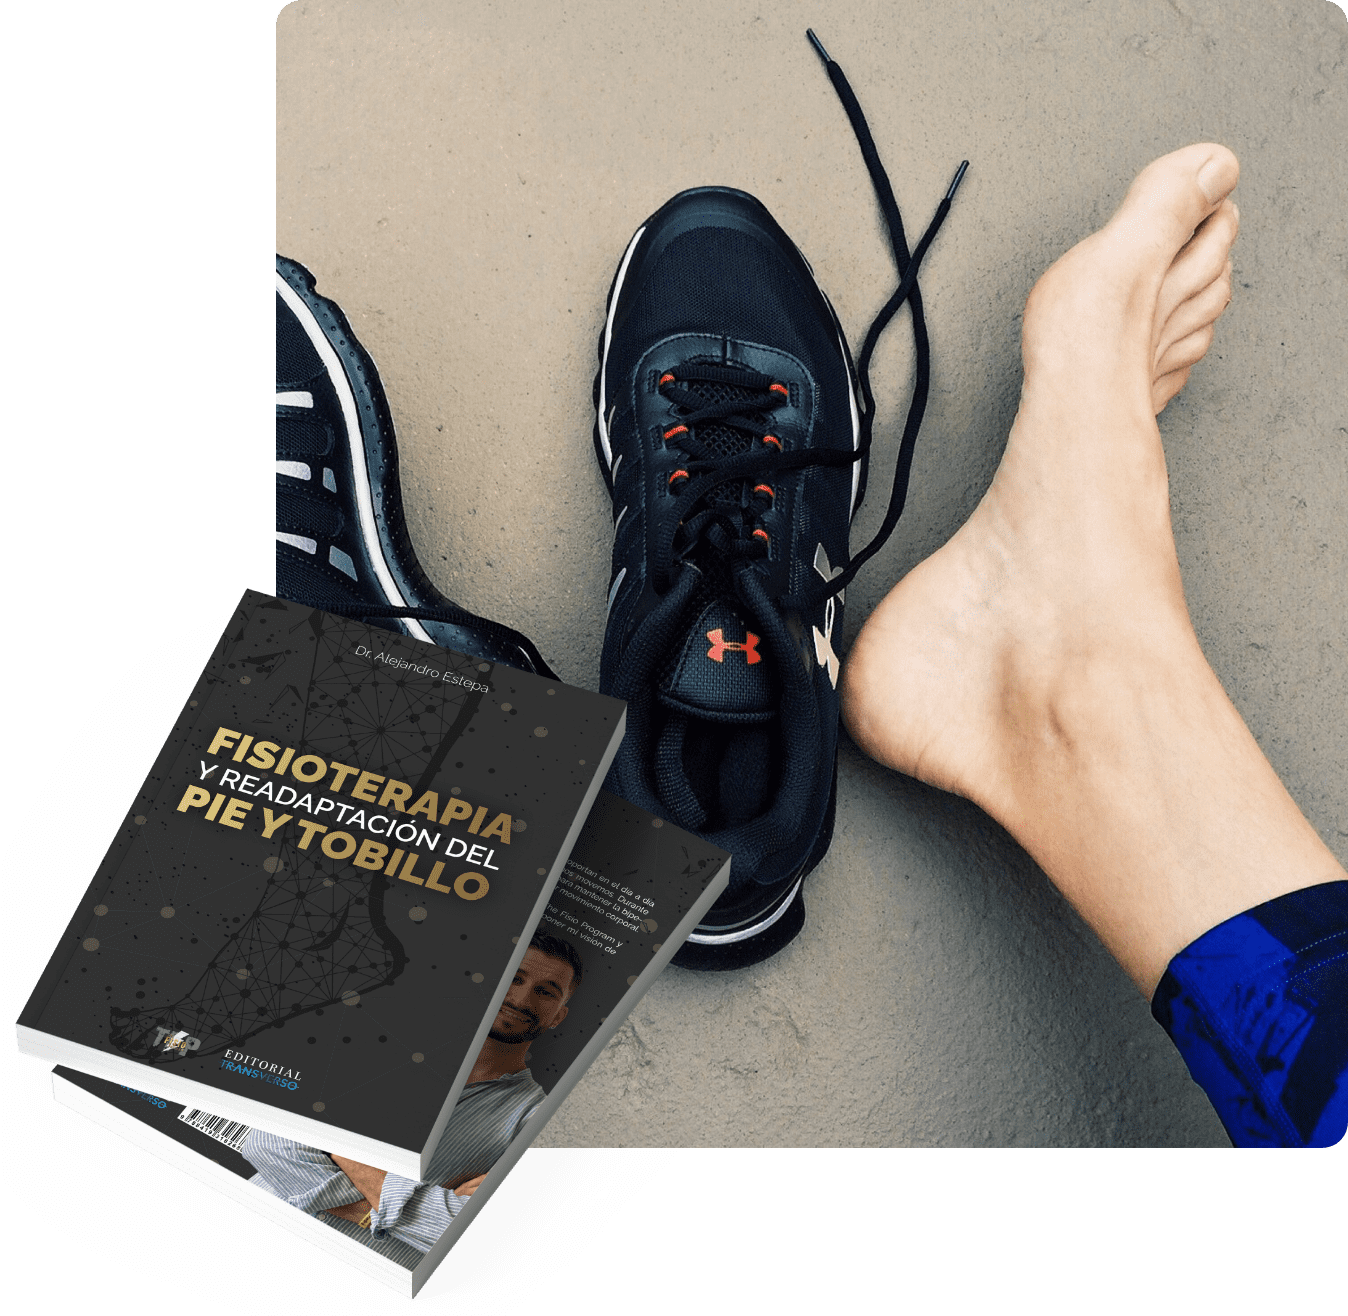 Fisioterapia y readaptación del pie y tobillo